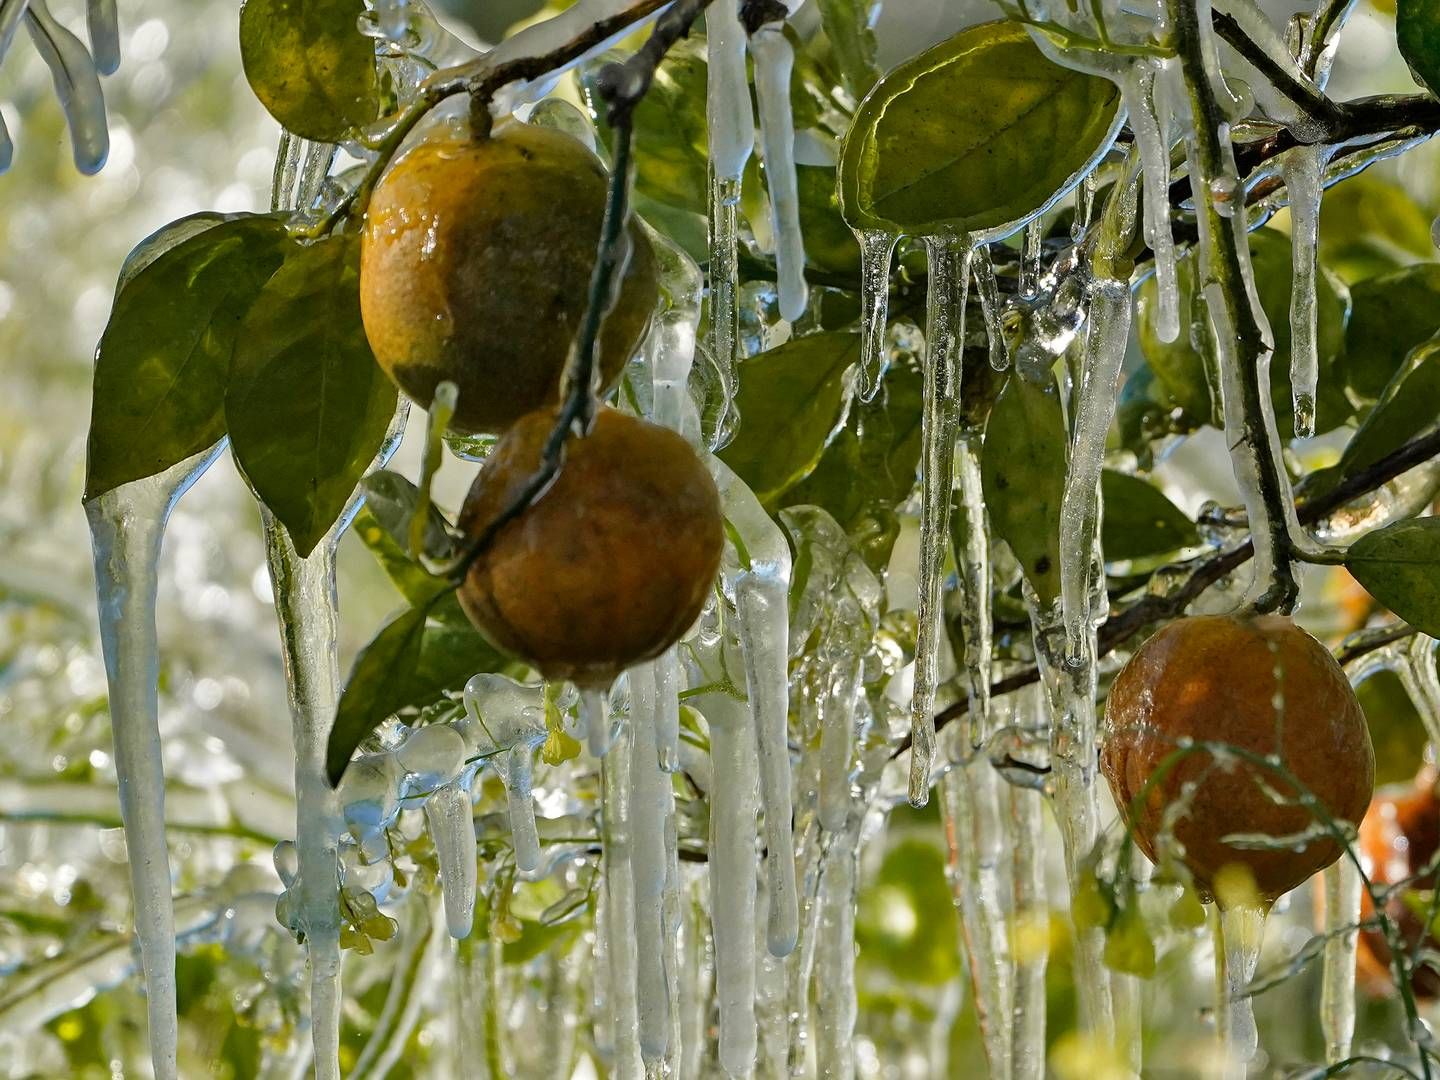 Dårligt vejr og sygdomme har haft store konsekvenser for udbyttet af appelsinhøsten i Florida - noget, der nu har konsekvenser for det globale marked, inklusive i Danmark, hvor producenter som Rynkeby varsler underlevering og tomme supermarkedshylder. | Foto: Chris O'meara/AP/Ritzau Scanpix